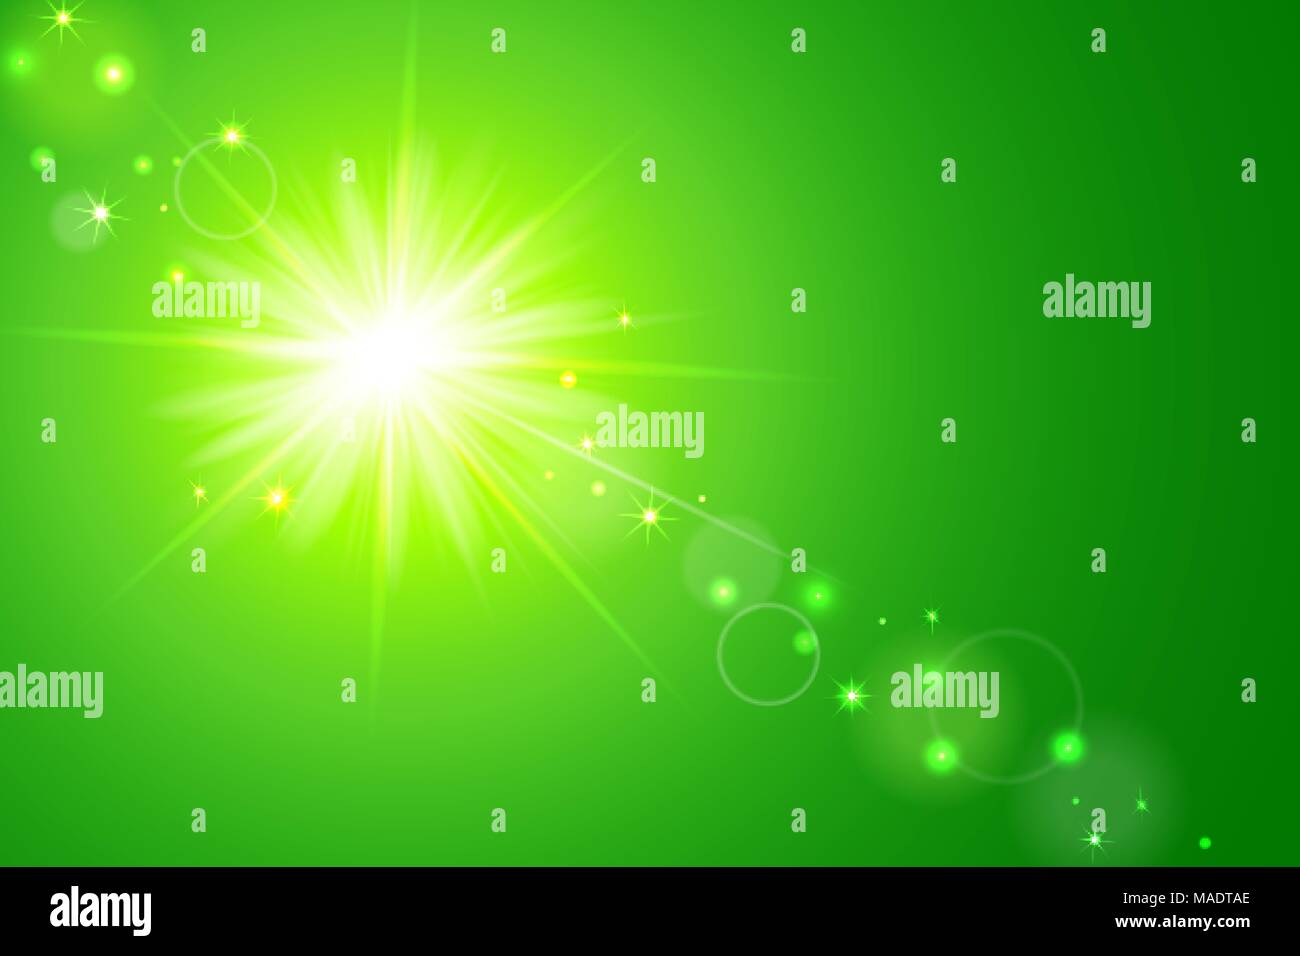 Illustration Vecteur de fond ensoleillé vert avec sun et lens flare Illustration de Vecteur